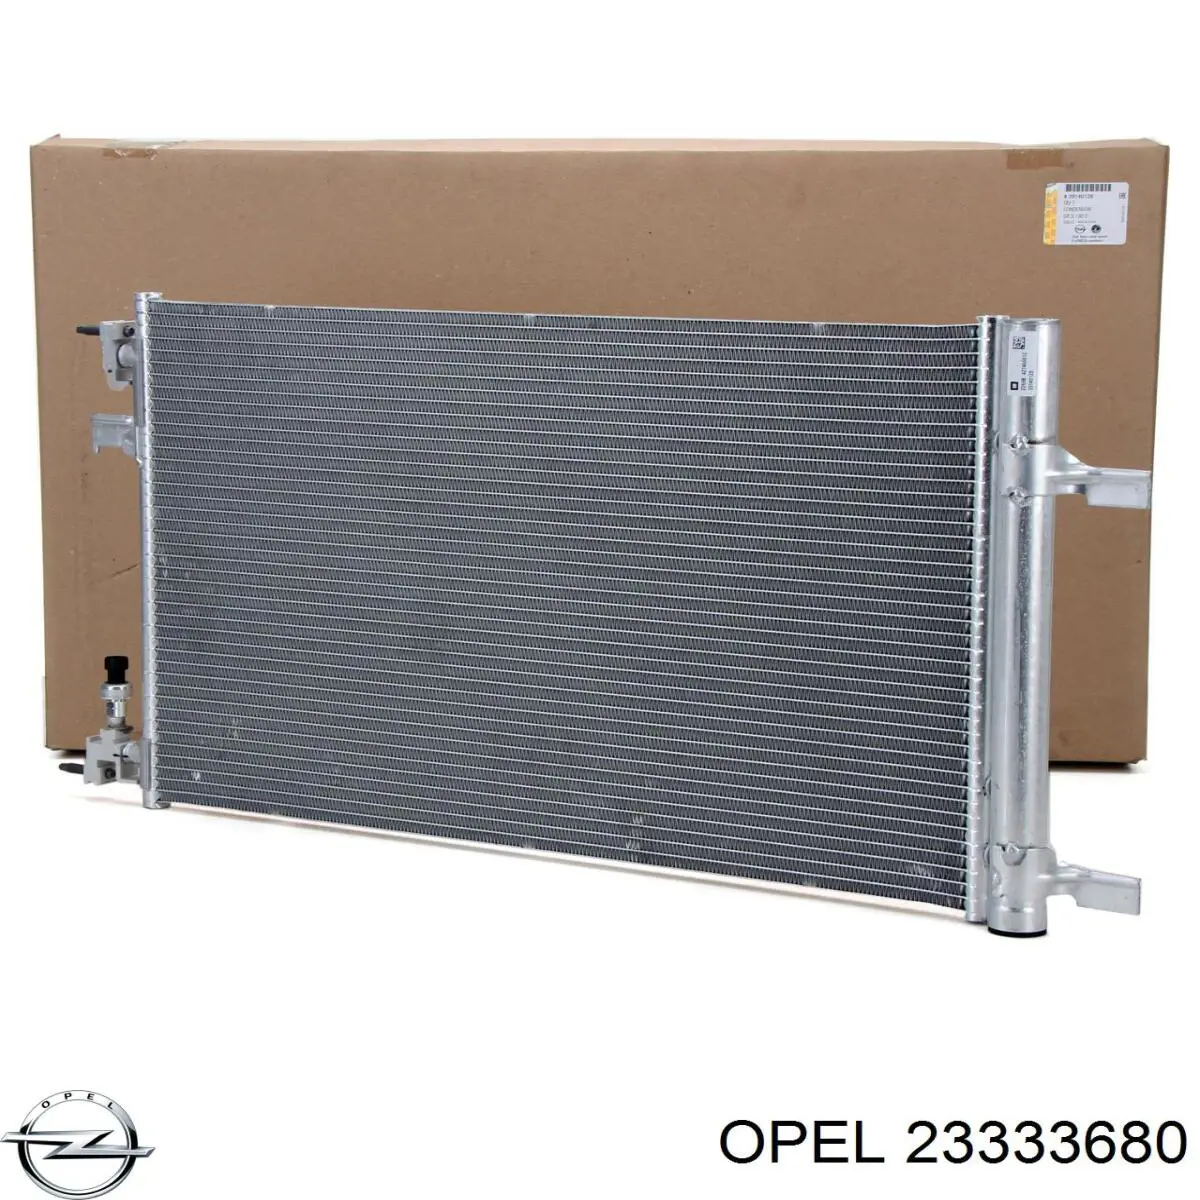 23333680 Opel condensador aire acondicionado